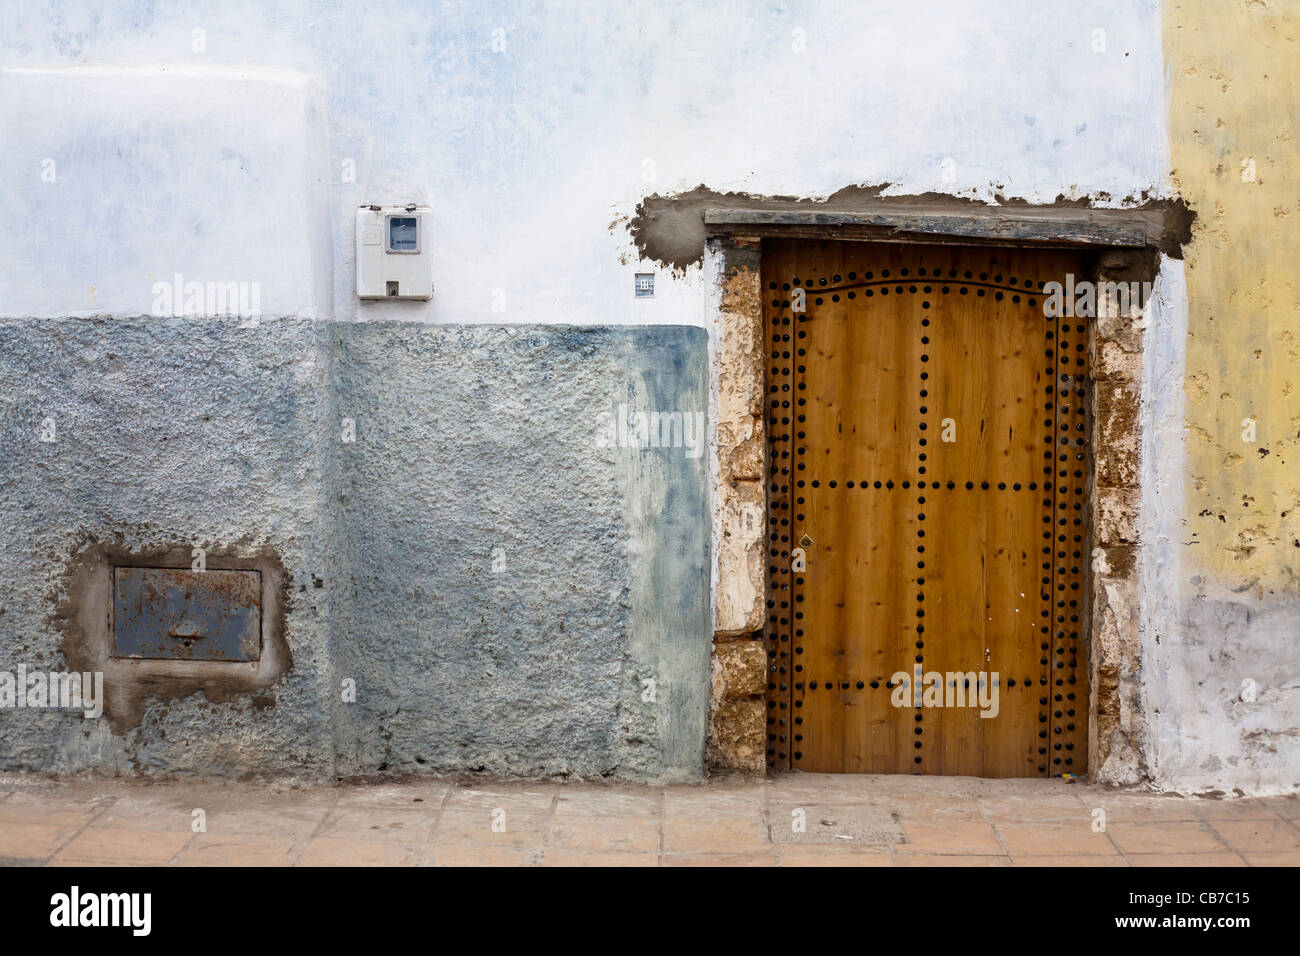 Images de voyage du Maroc, Marrakech, Essaouira et principalement de Rabat. Banque D'Images